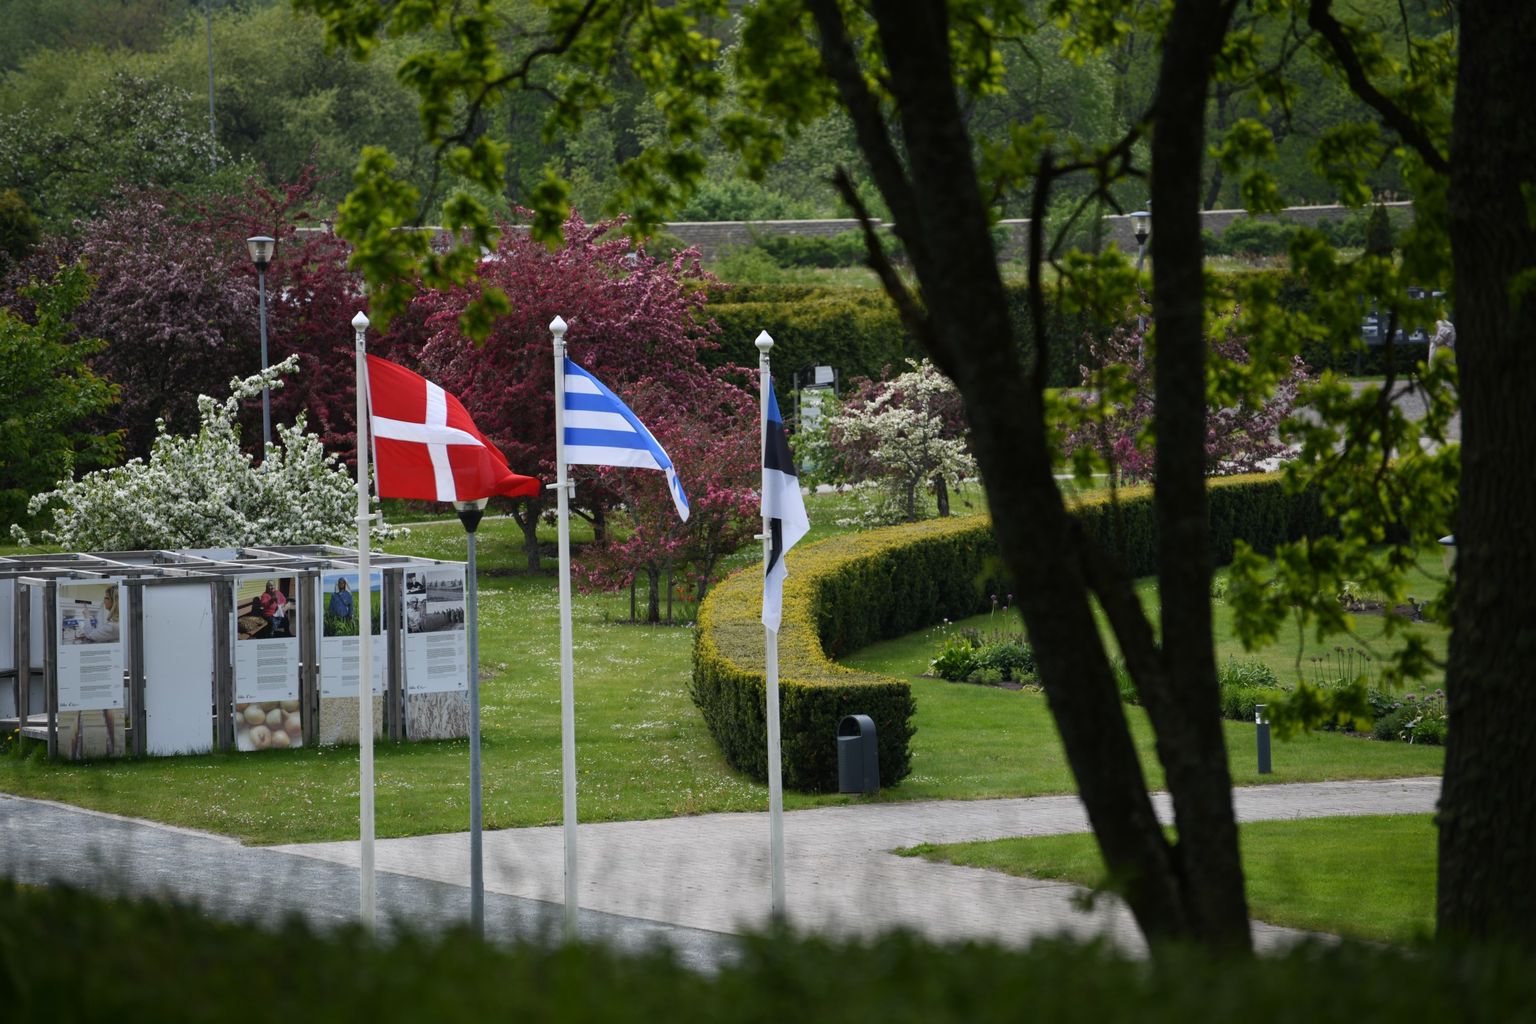 Botaanikaaed korraldab koostöös Taani saatkonnaga juunis põnevaid üritusi kogu perele.